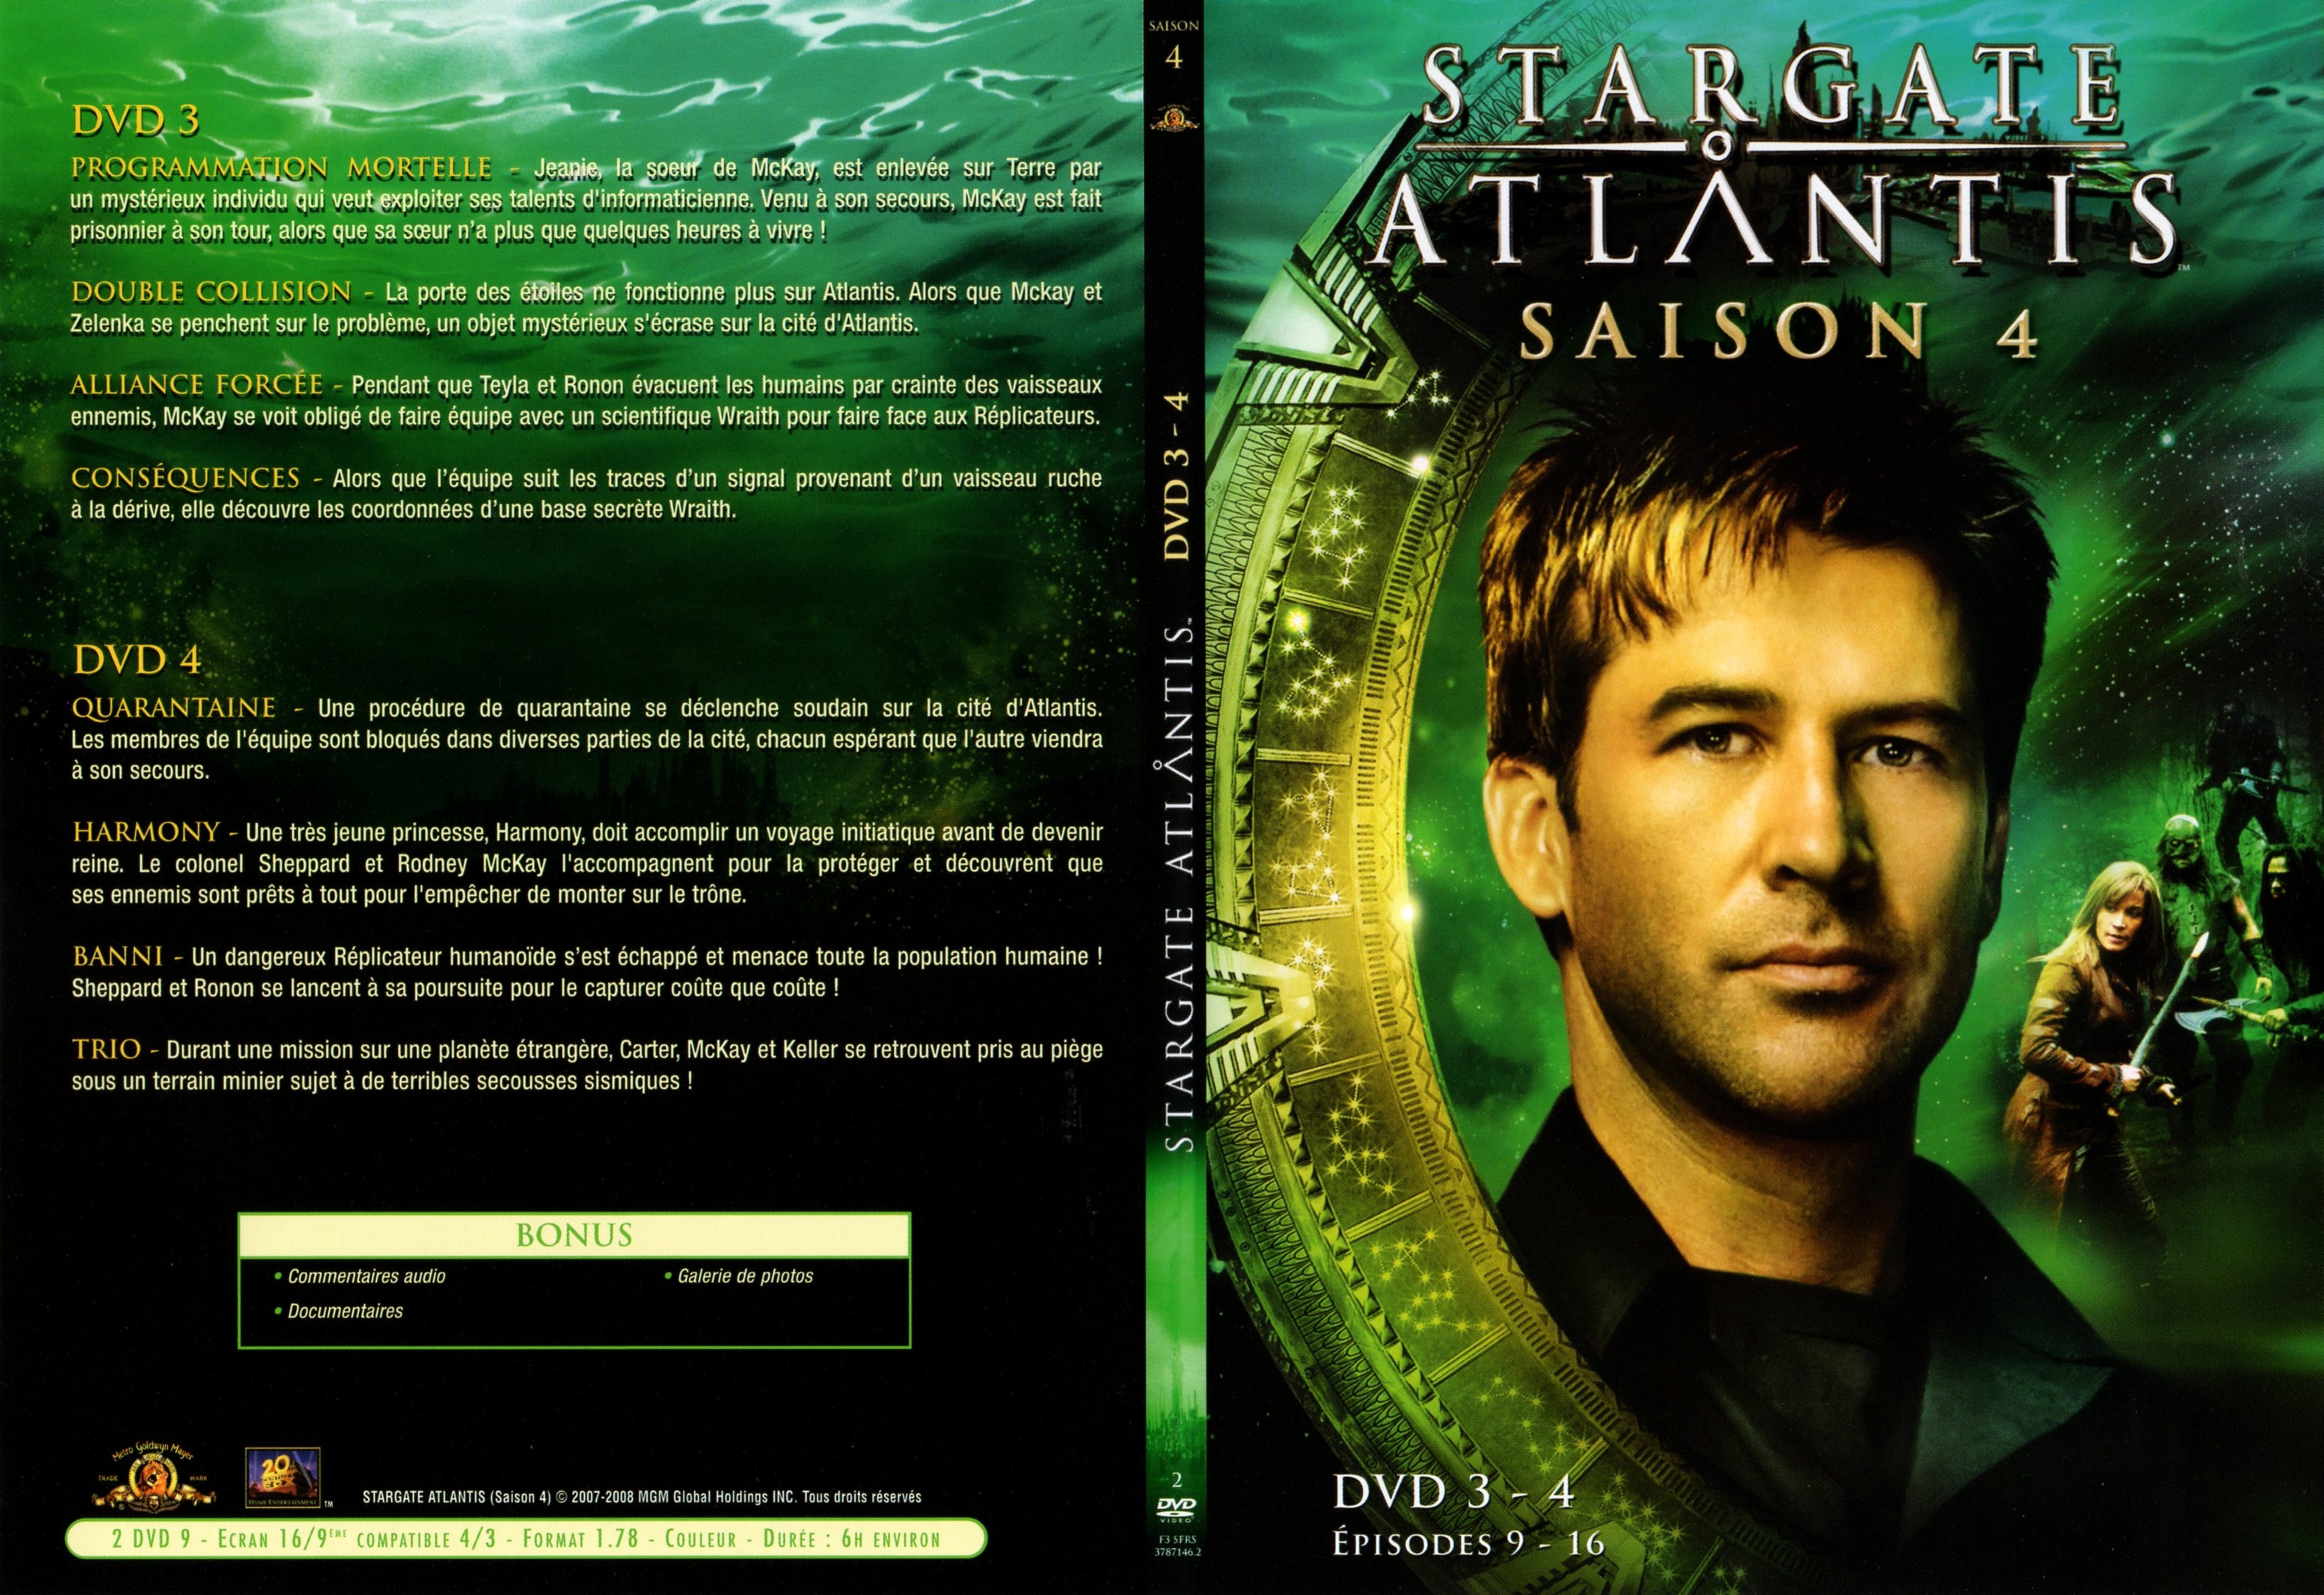 Jaquette DVD Stargate atlantis saison 4 DVD 2